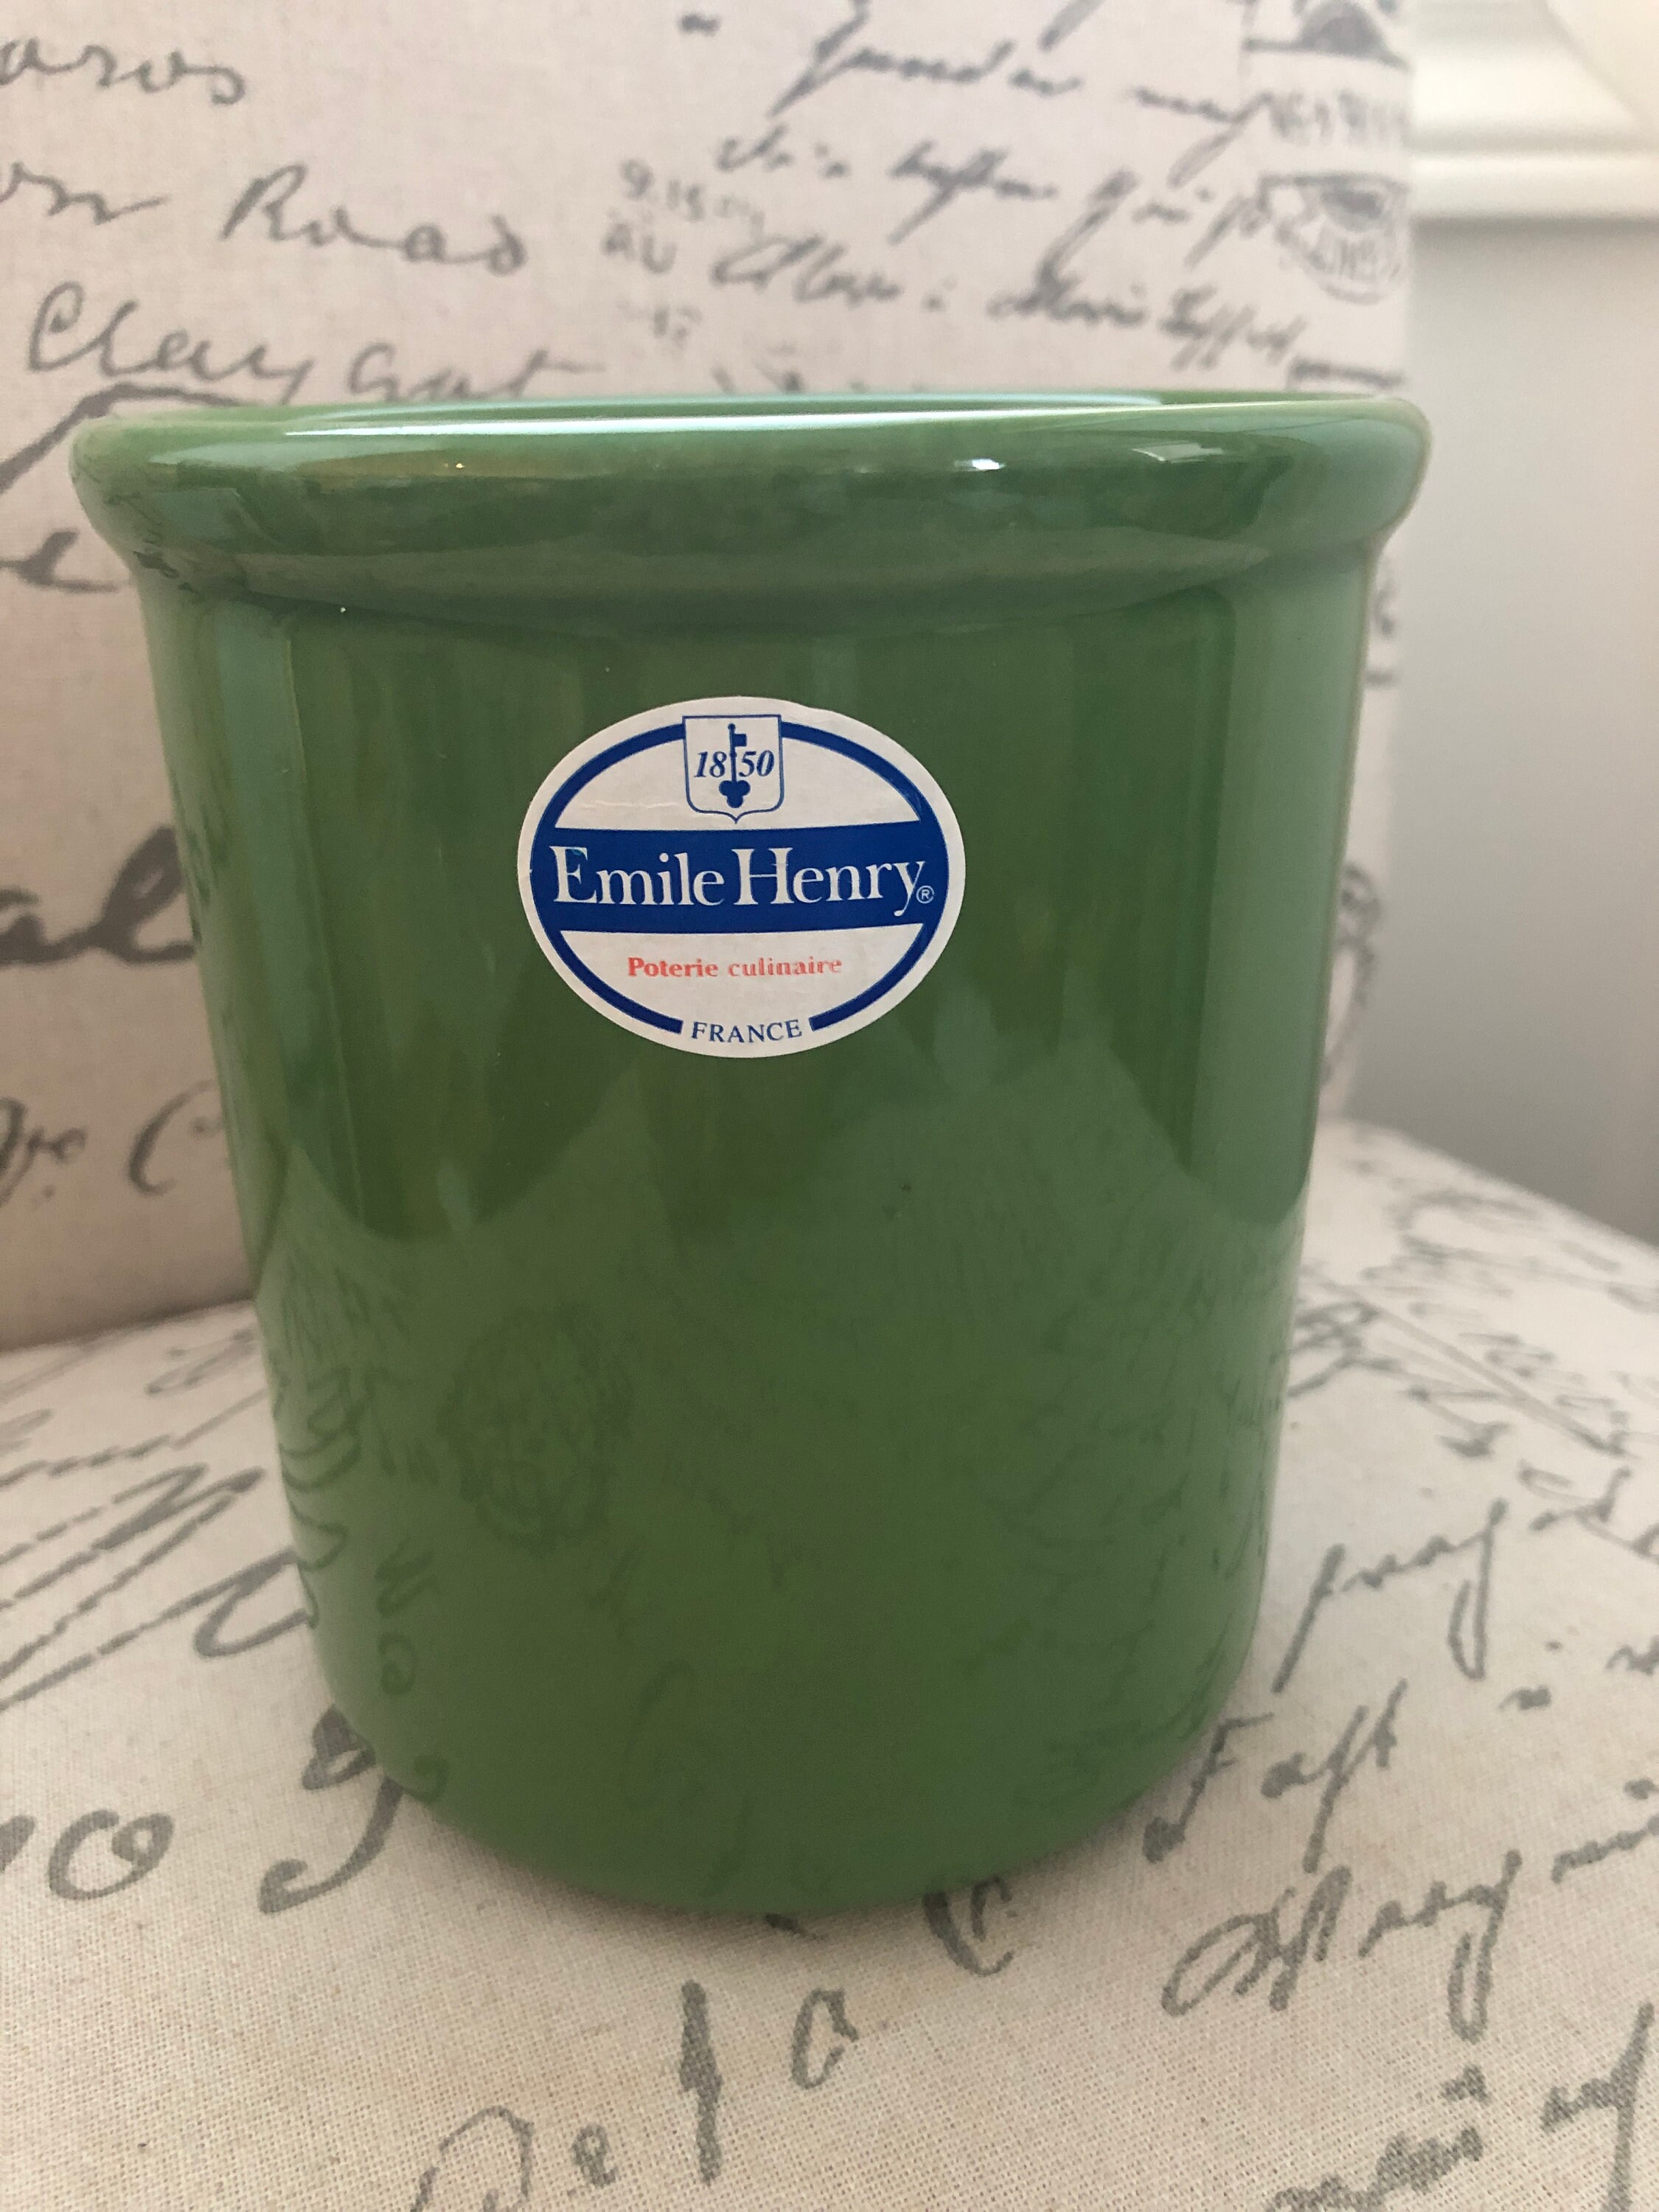 Emile Henry France Green Utensil Holder Crock / Vintage Green Stoneware  Crock 